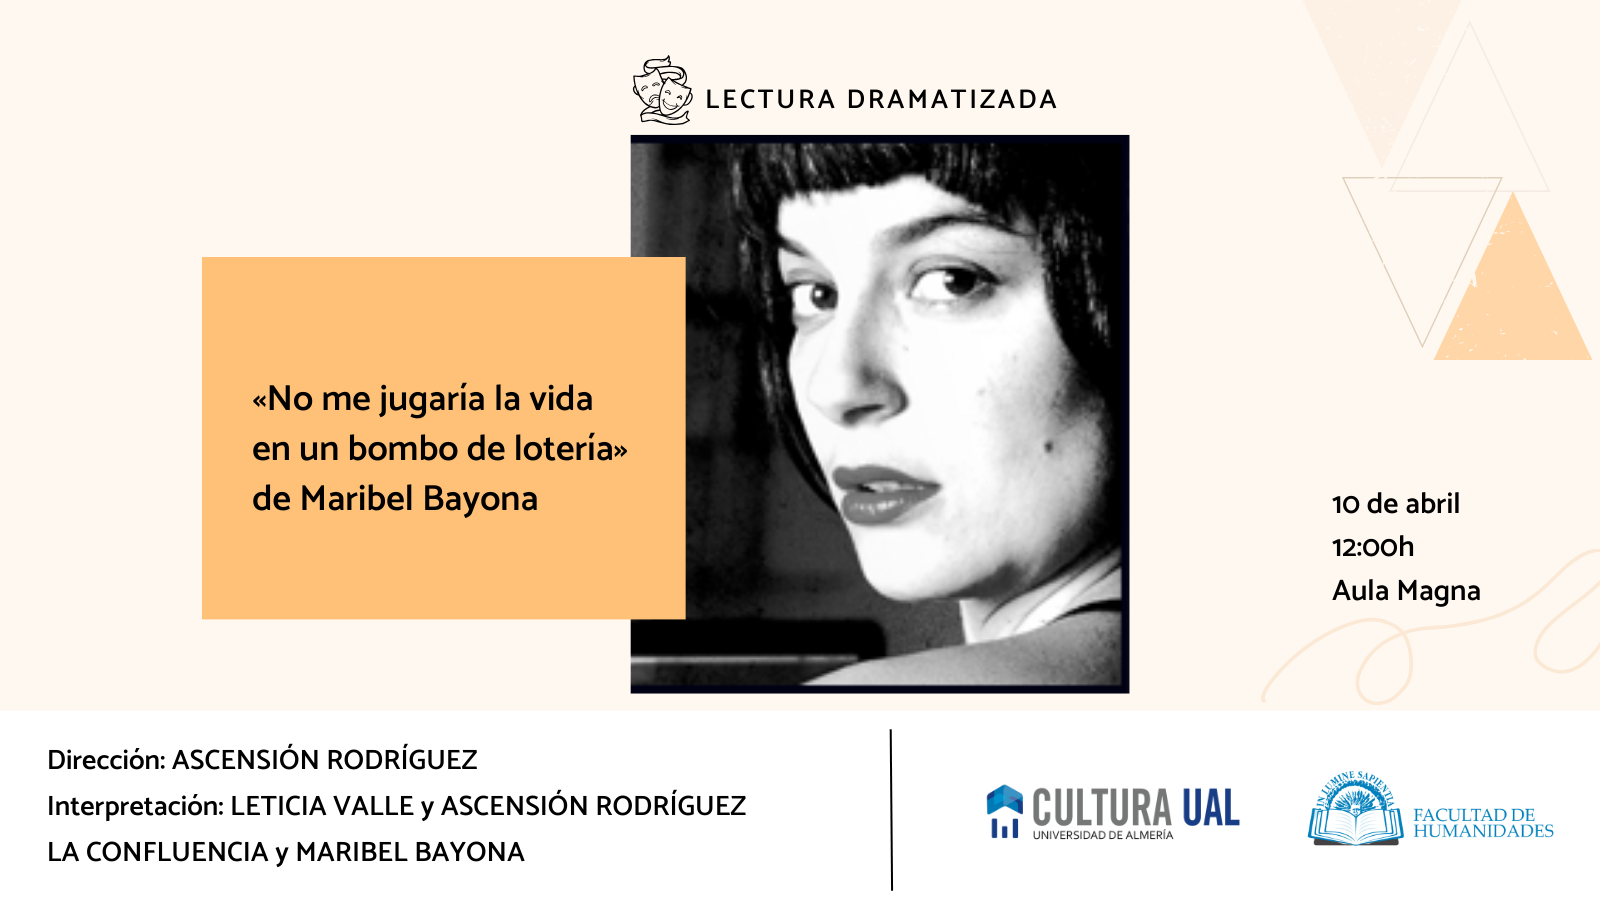 La Facultad de Humanidades y Josefa Martínez Romero organizan la lectura dramatizada «No me jugaría la vida en un bombo de lotería» de Maribel Bayona.
